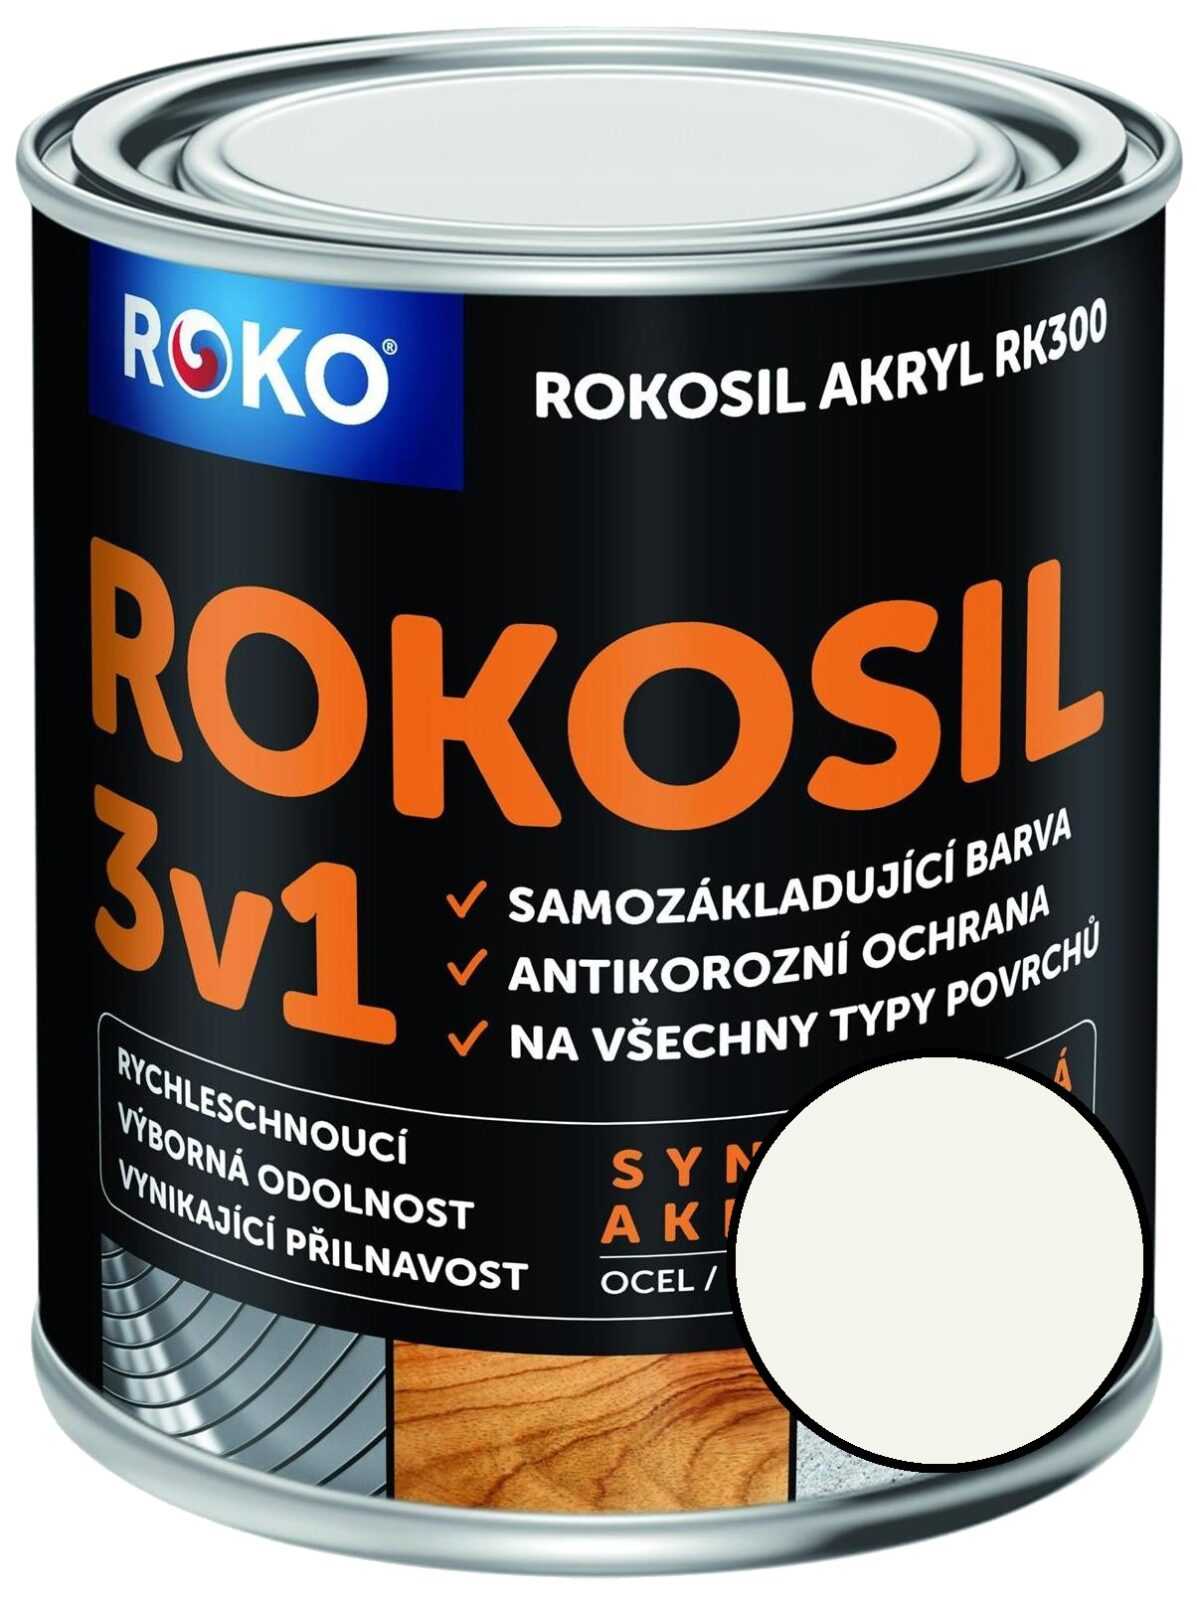 Barva samozákladující Rokosil akryl 3v1 RK 300 bílá 0